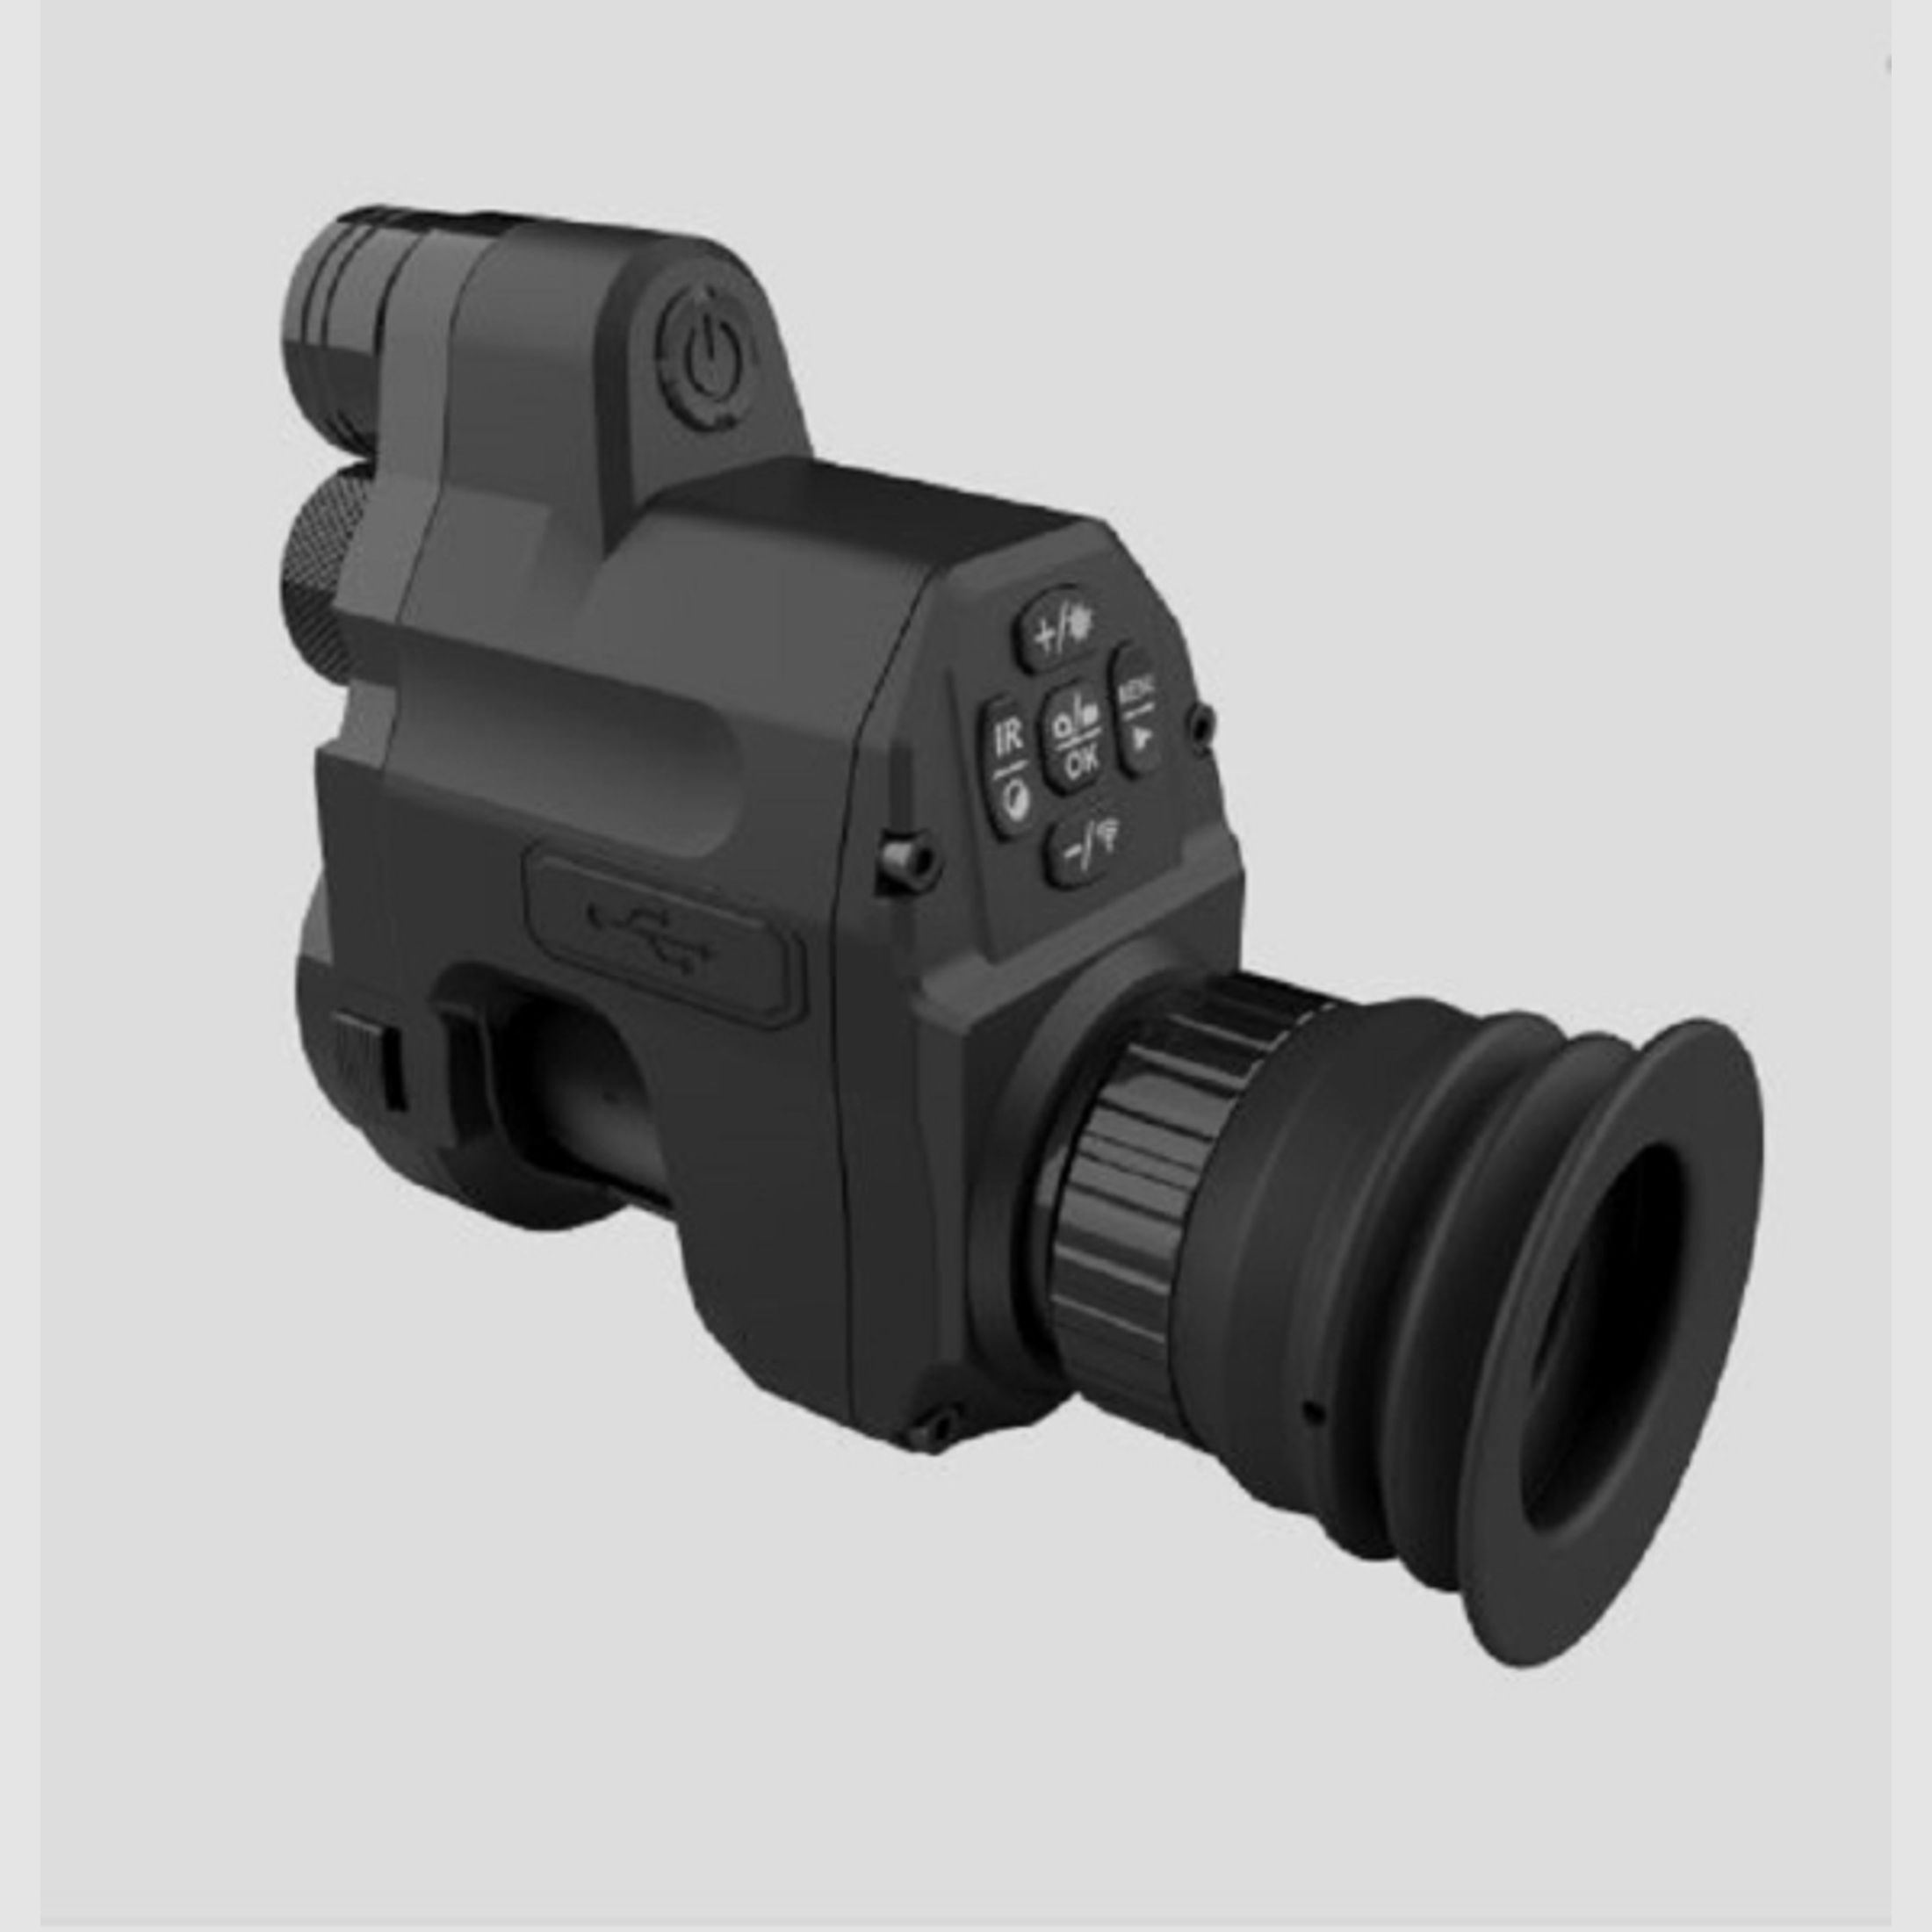 KURZ-ZEIT-SONDER-ANGEBOT: Nachtsicht-Nachsatzgerät PARD NV007V - IR 940 nm - 16mm mit 45 mm Adapter